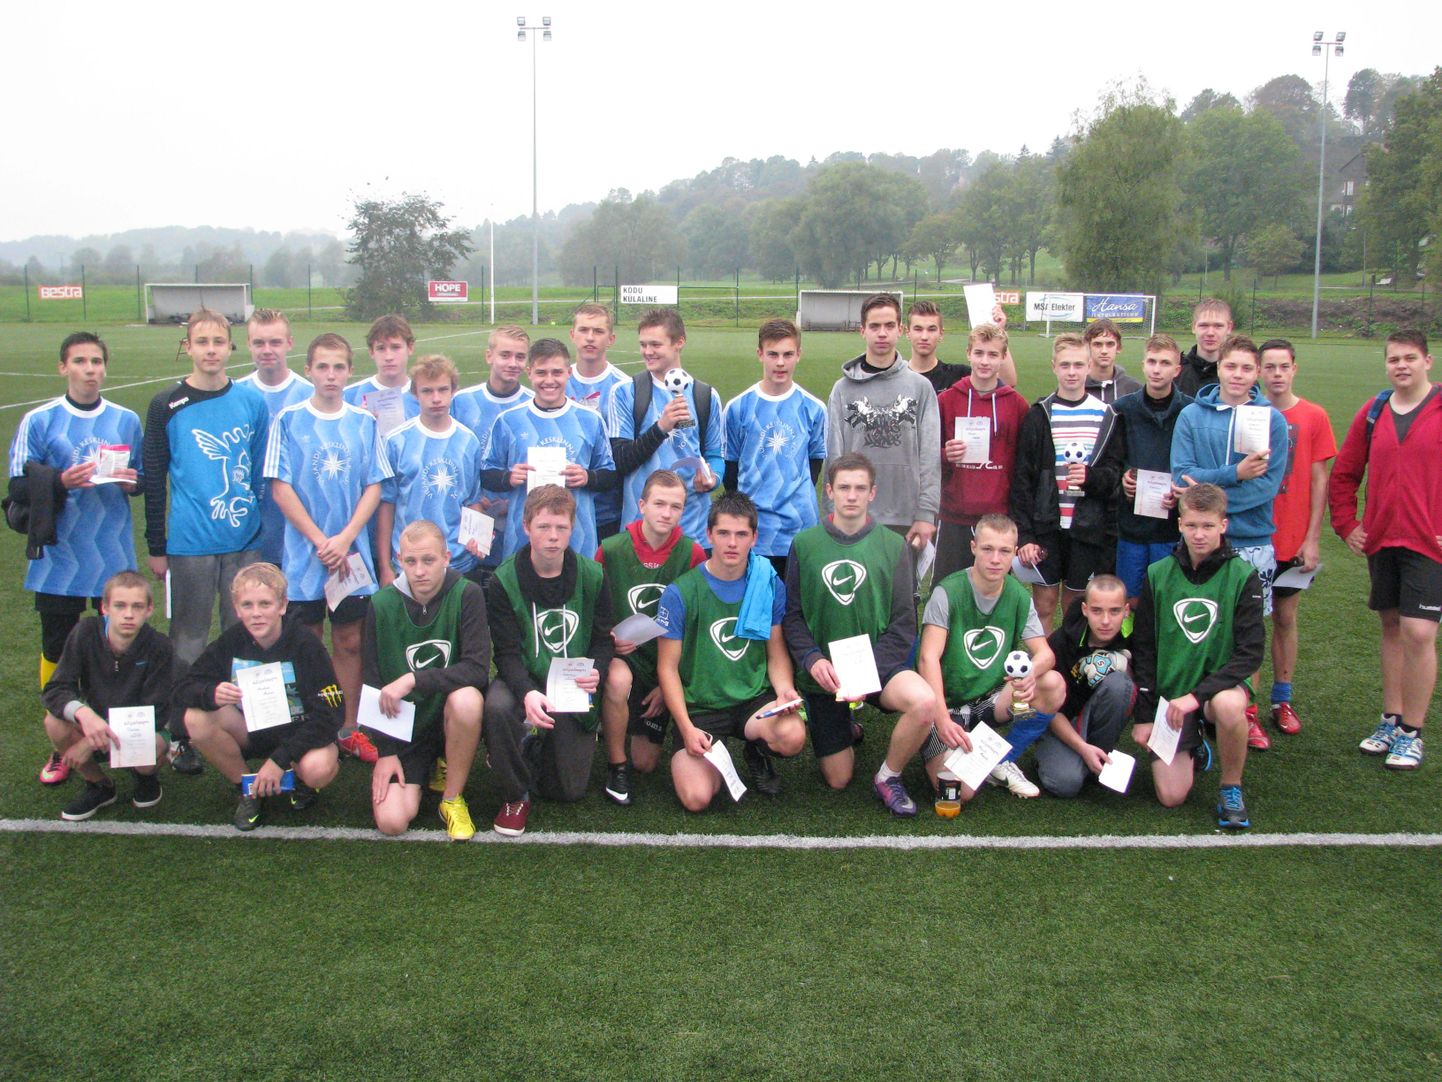 Esmaspäeval peetud maakonna koolide jalgpalliturniiril osales üheksa meeskonda. Pildile kogunesid kolme edukama, Tarvastu, Kesklinna ja Jakobsoni kooli võistkonna mängijad.